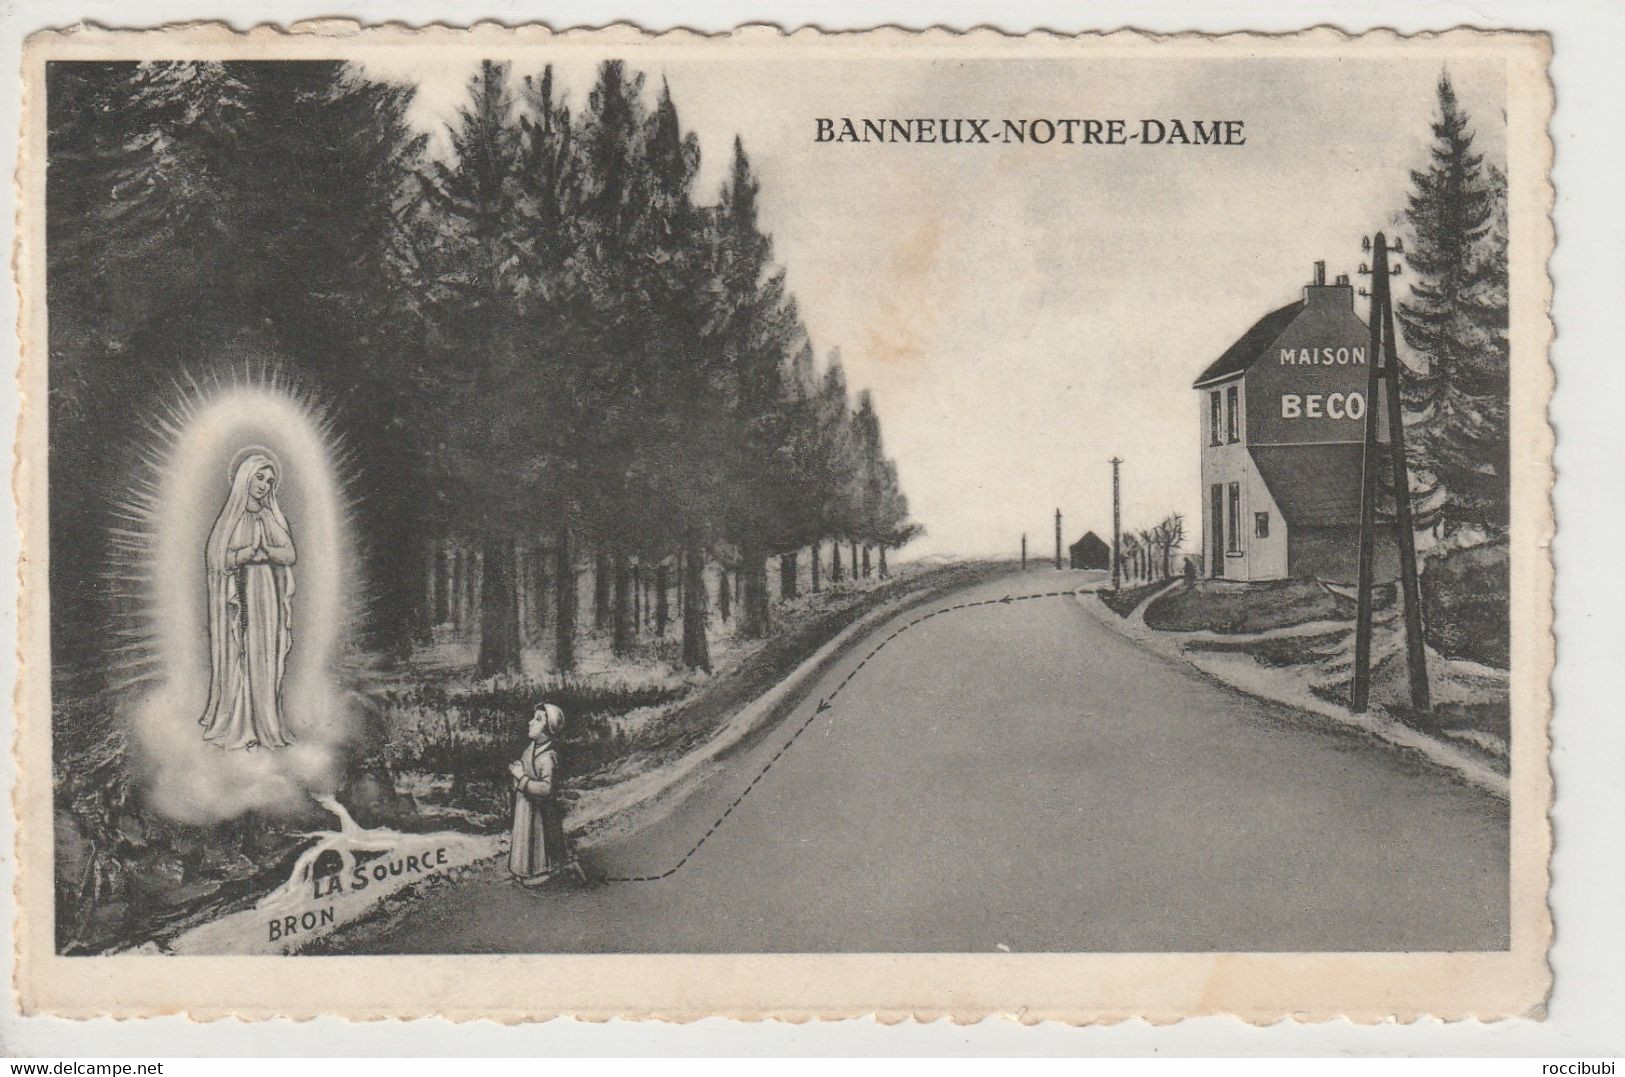 Banneux-Notre-Dame, Sprimont, Lüttich, Belgien - Sprimont